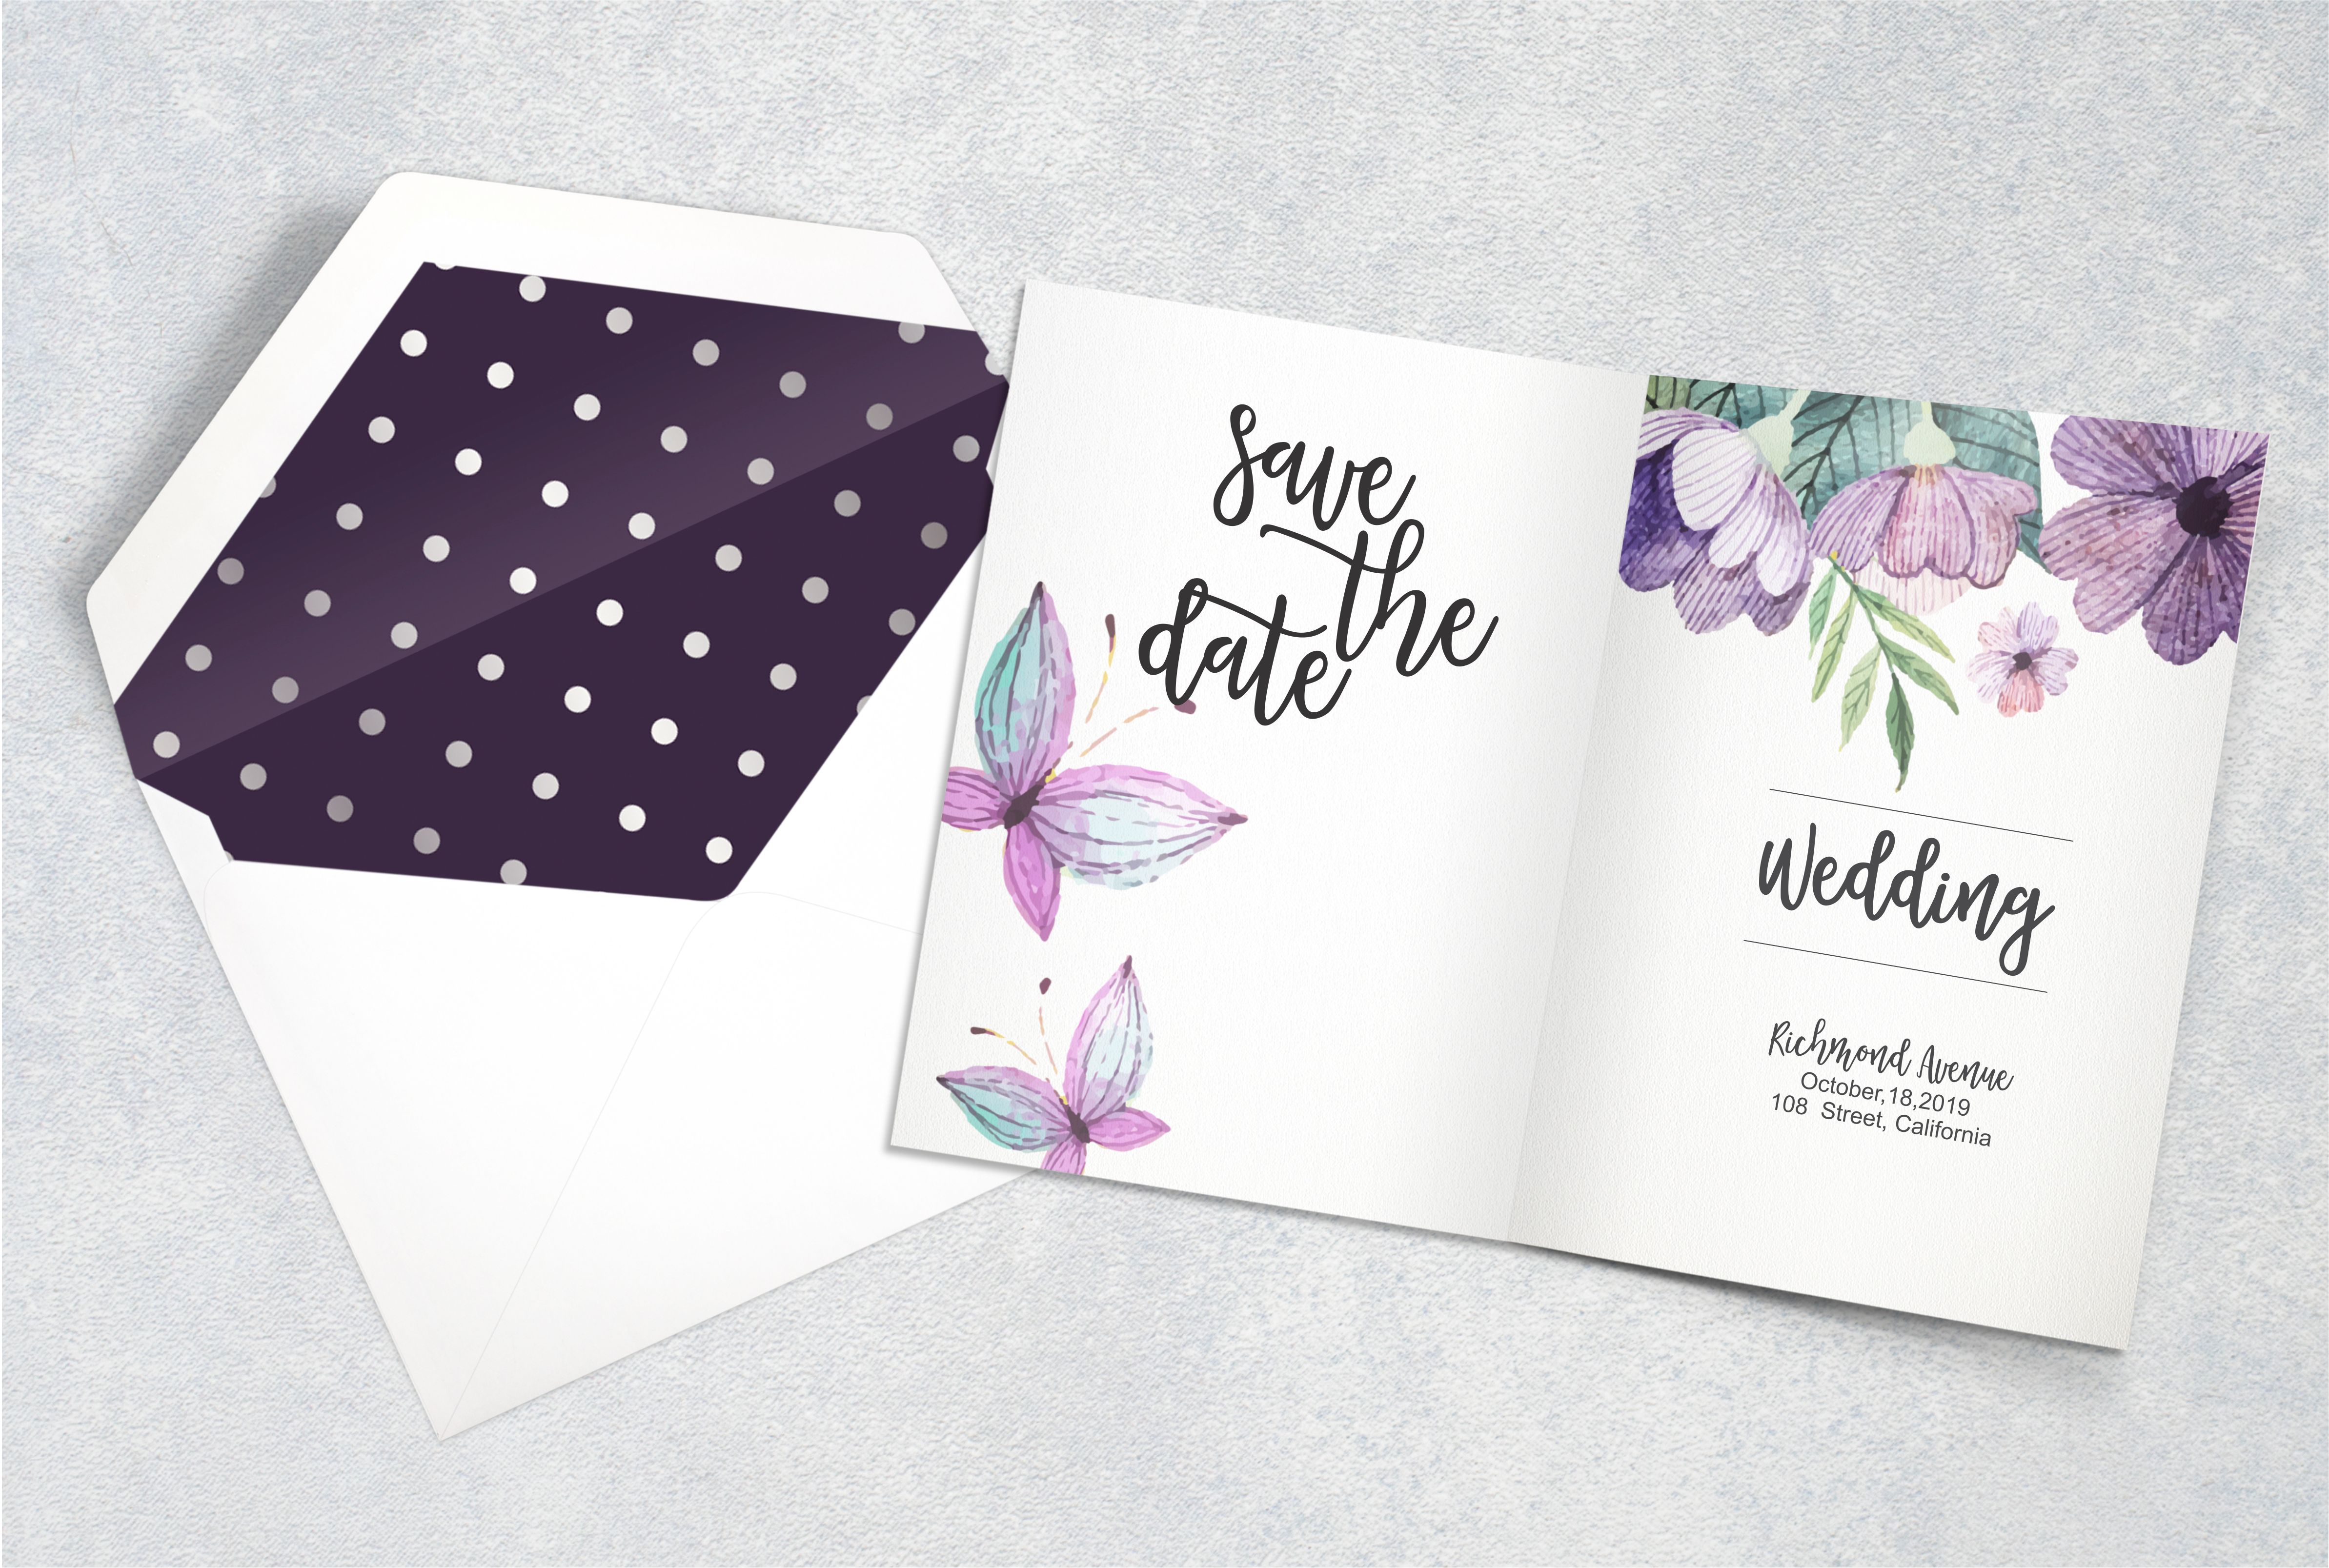 Delicate floral wedding invitation in purple.